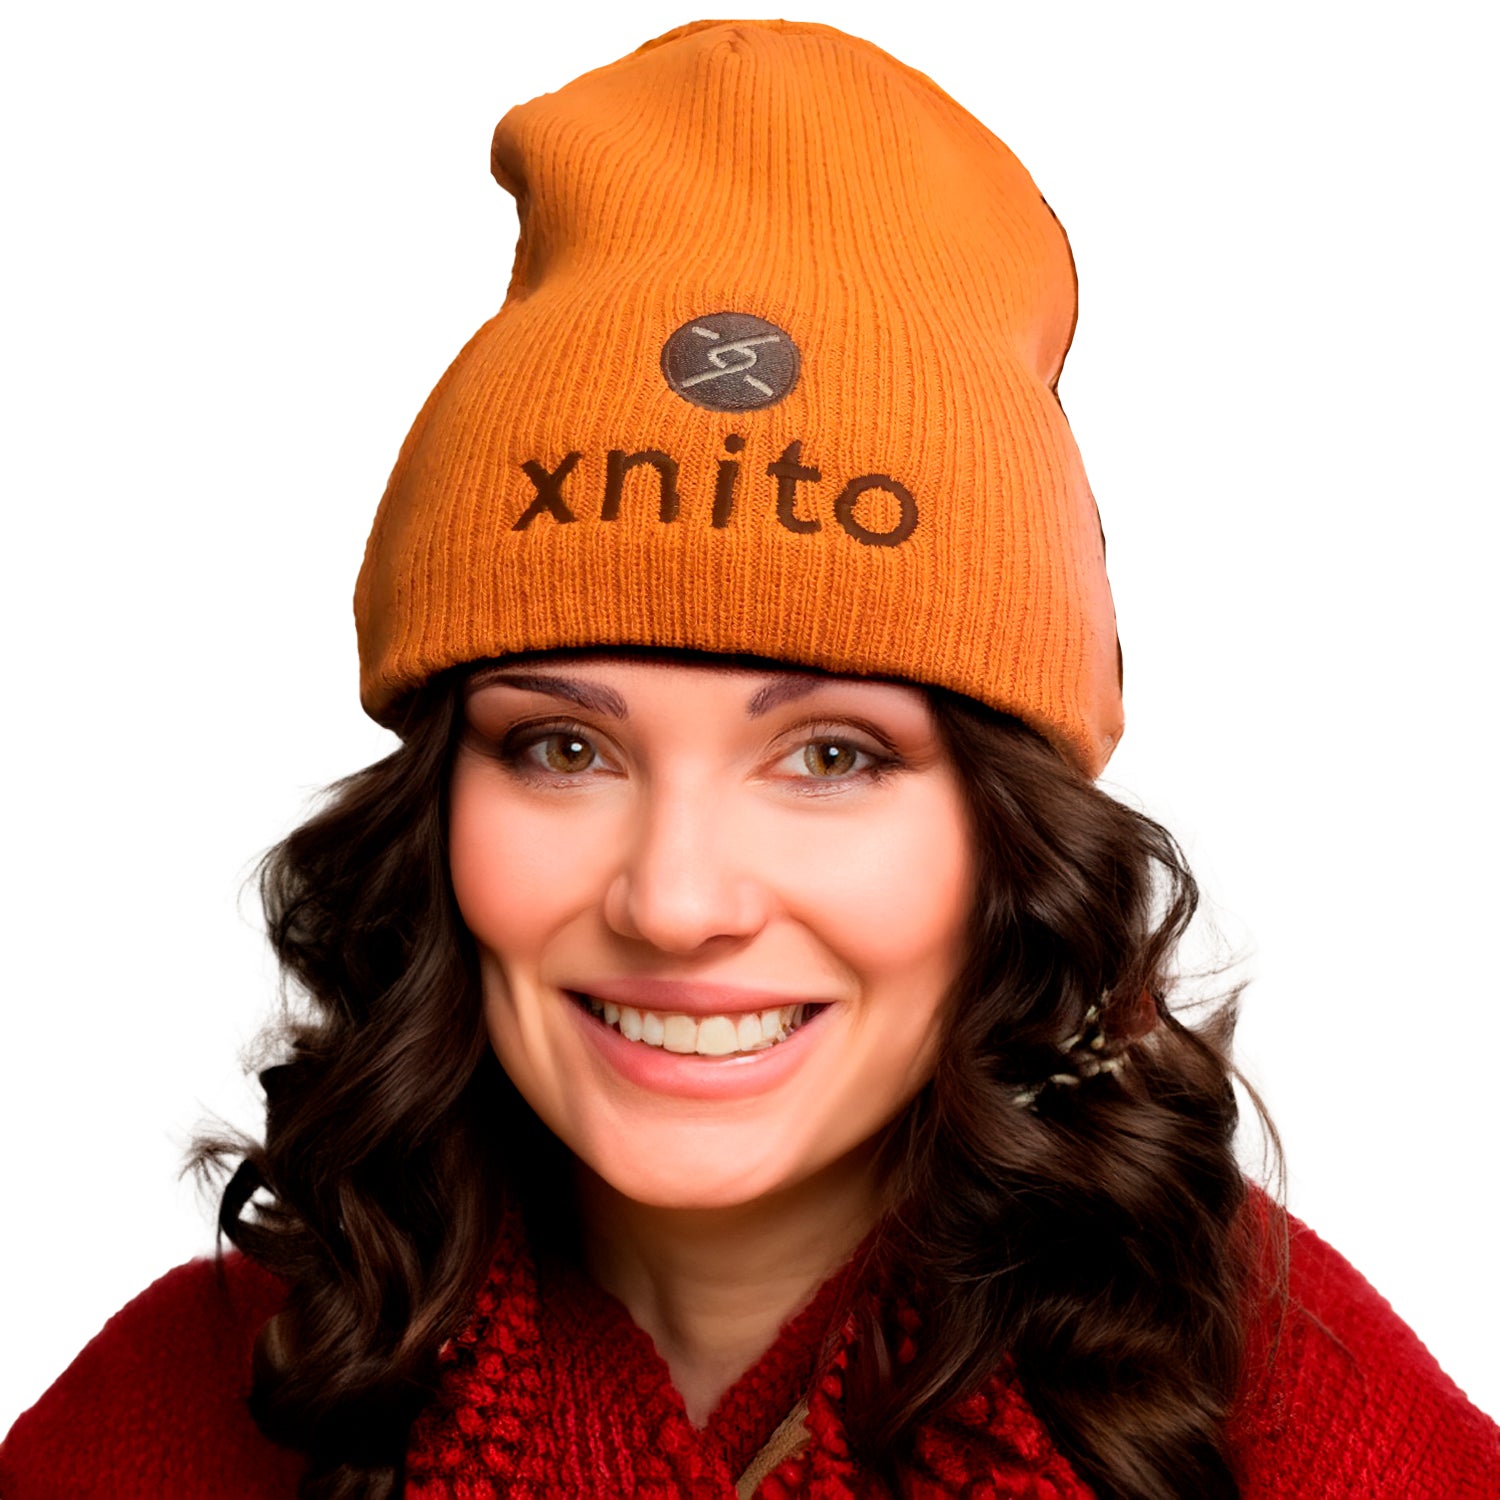 Xnito Mütze